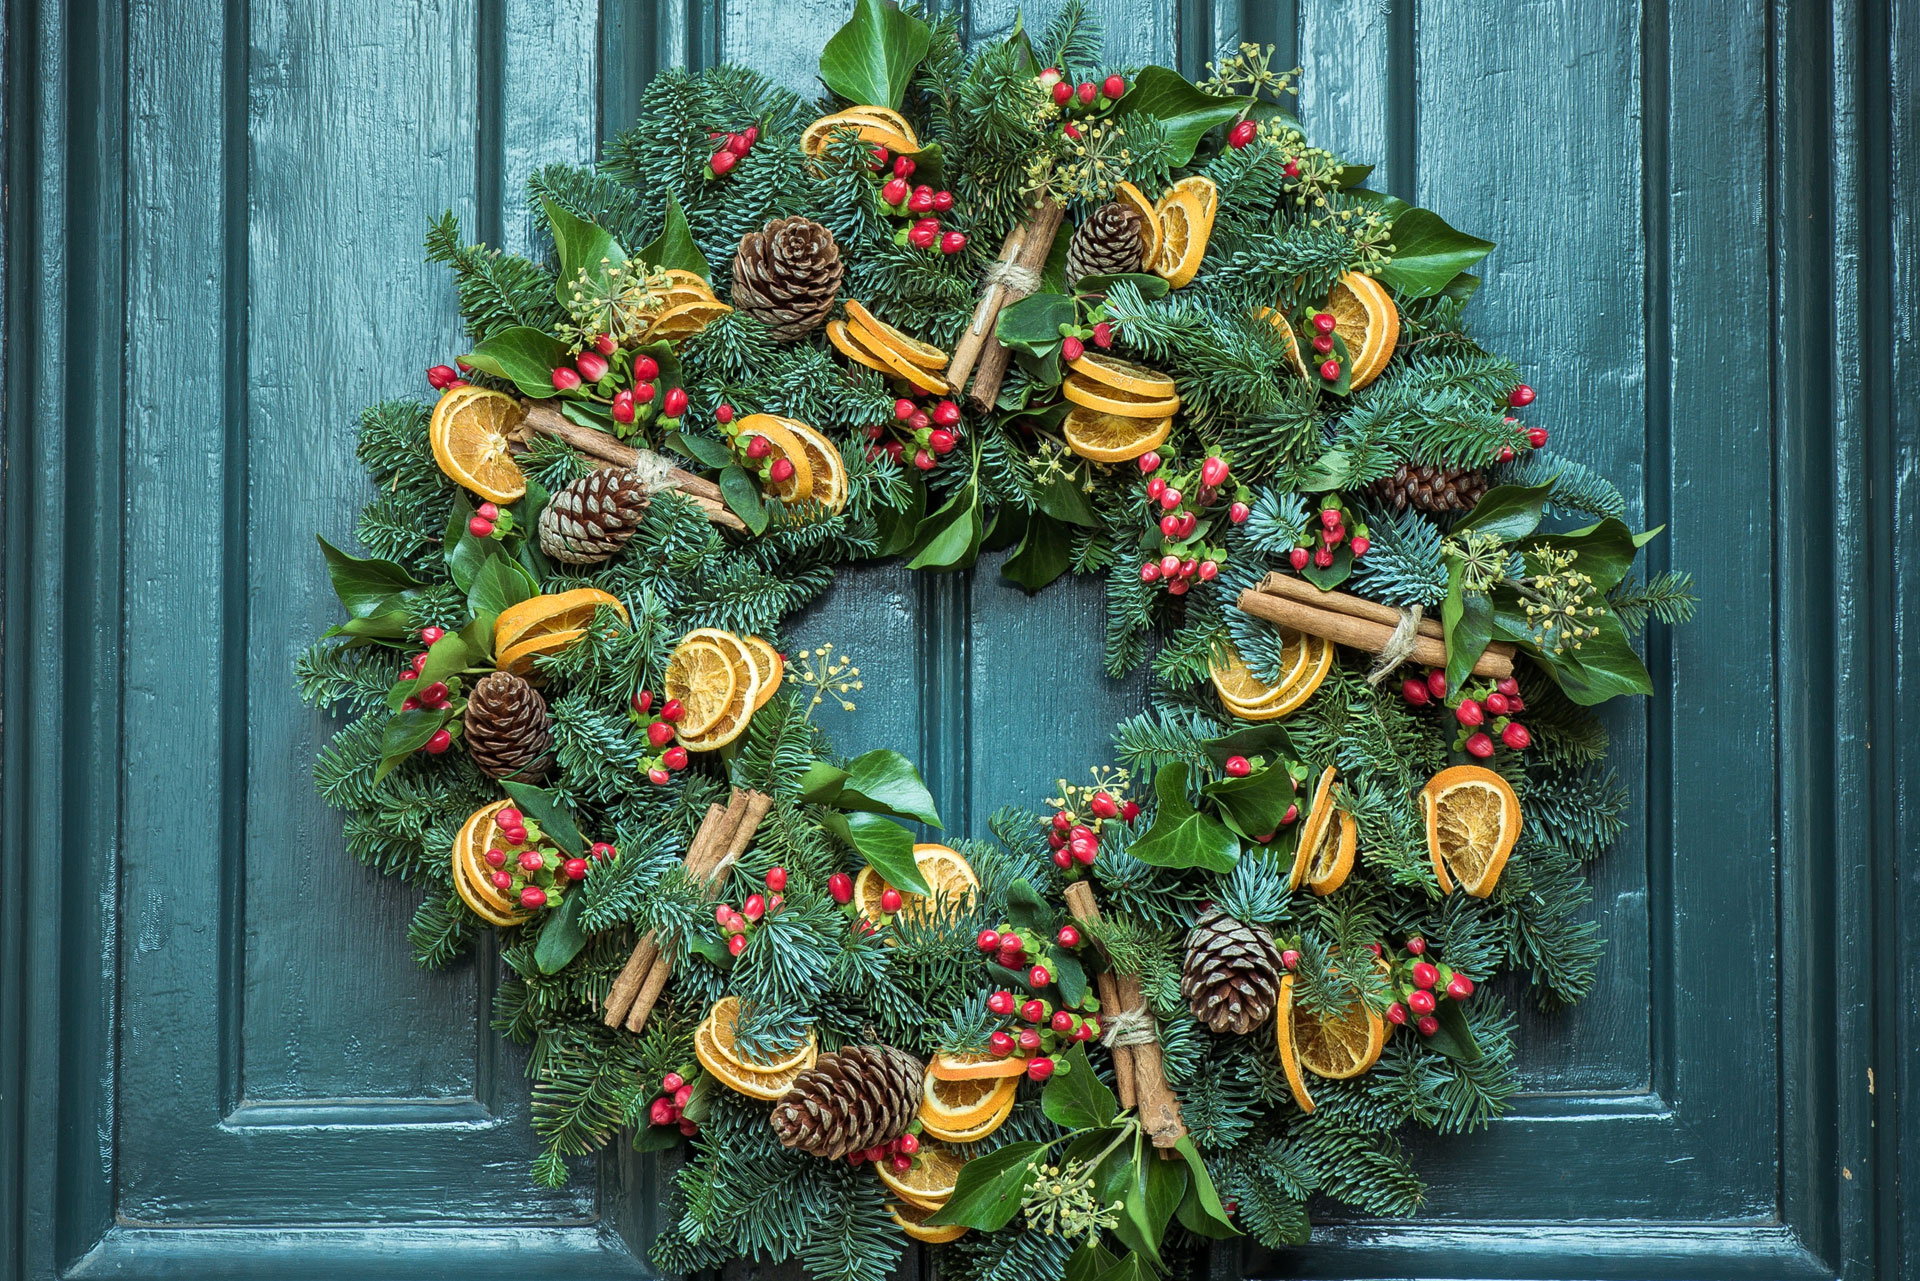 Wardian London wreath-making class